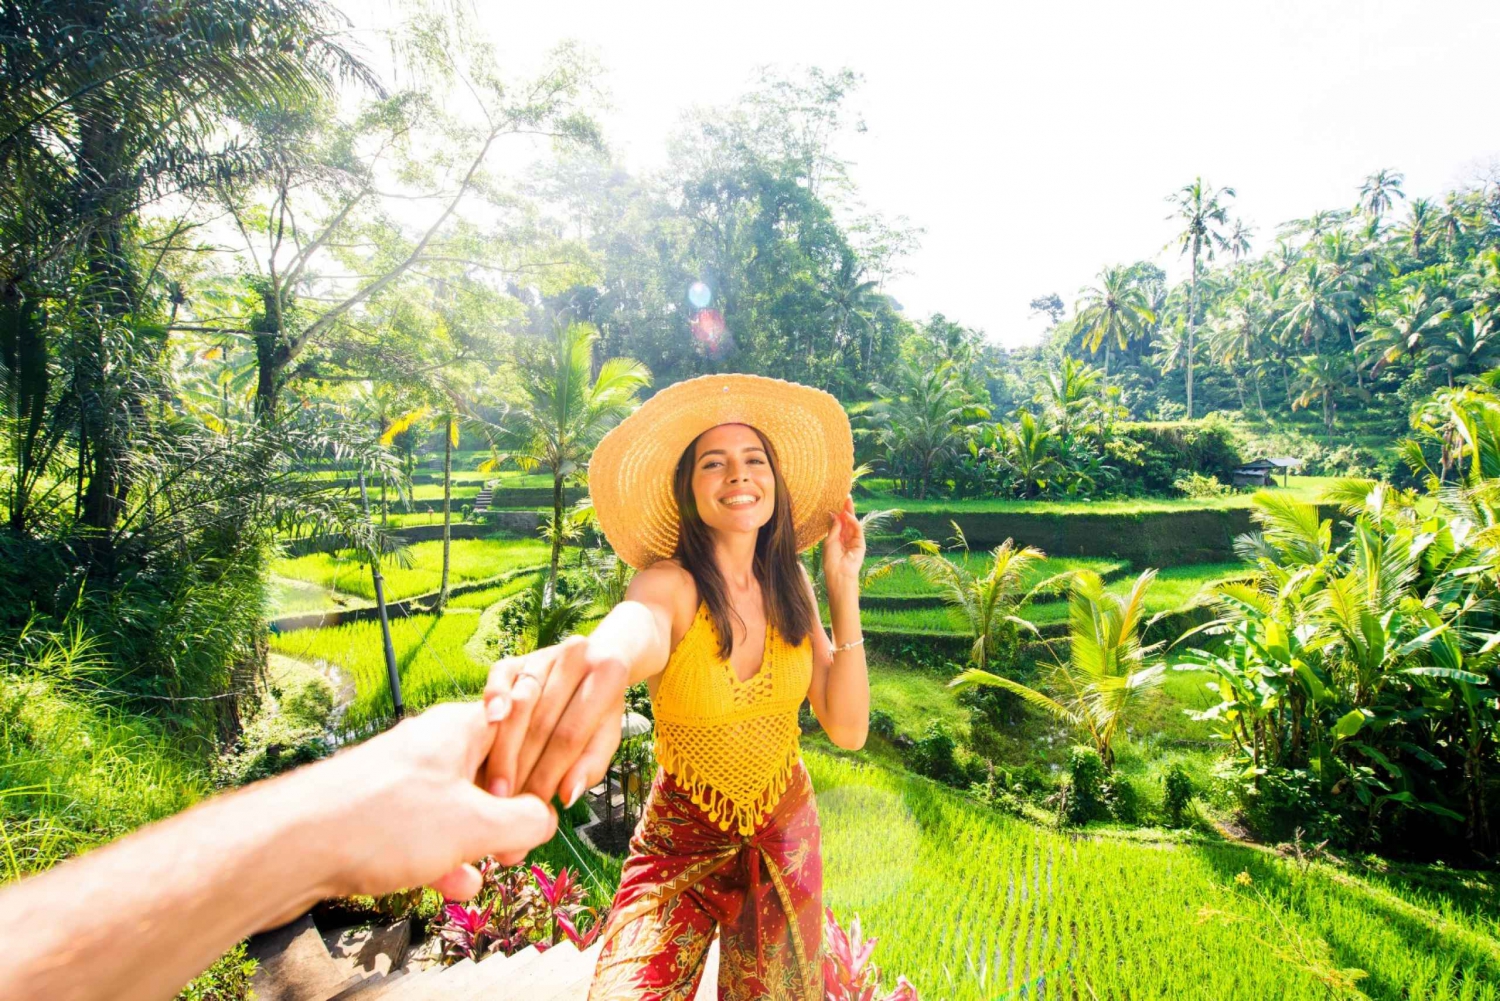 Bali: Det bedste af Ubud. Skov, rismarker, tempel og meget mere. Privat